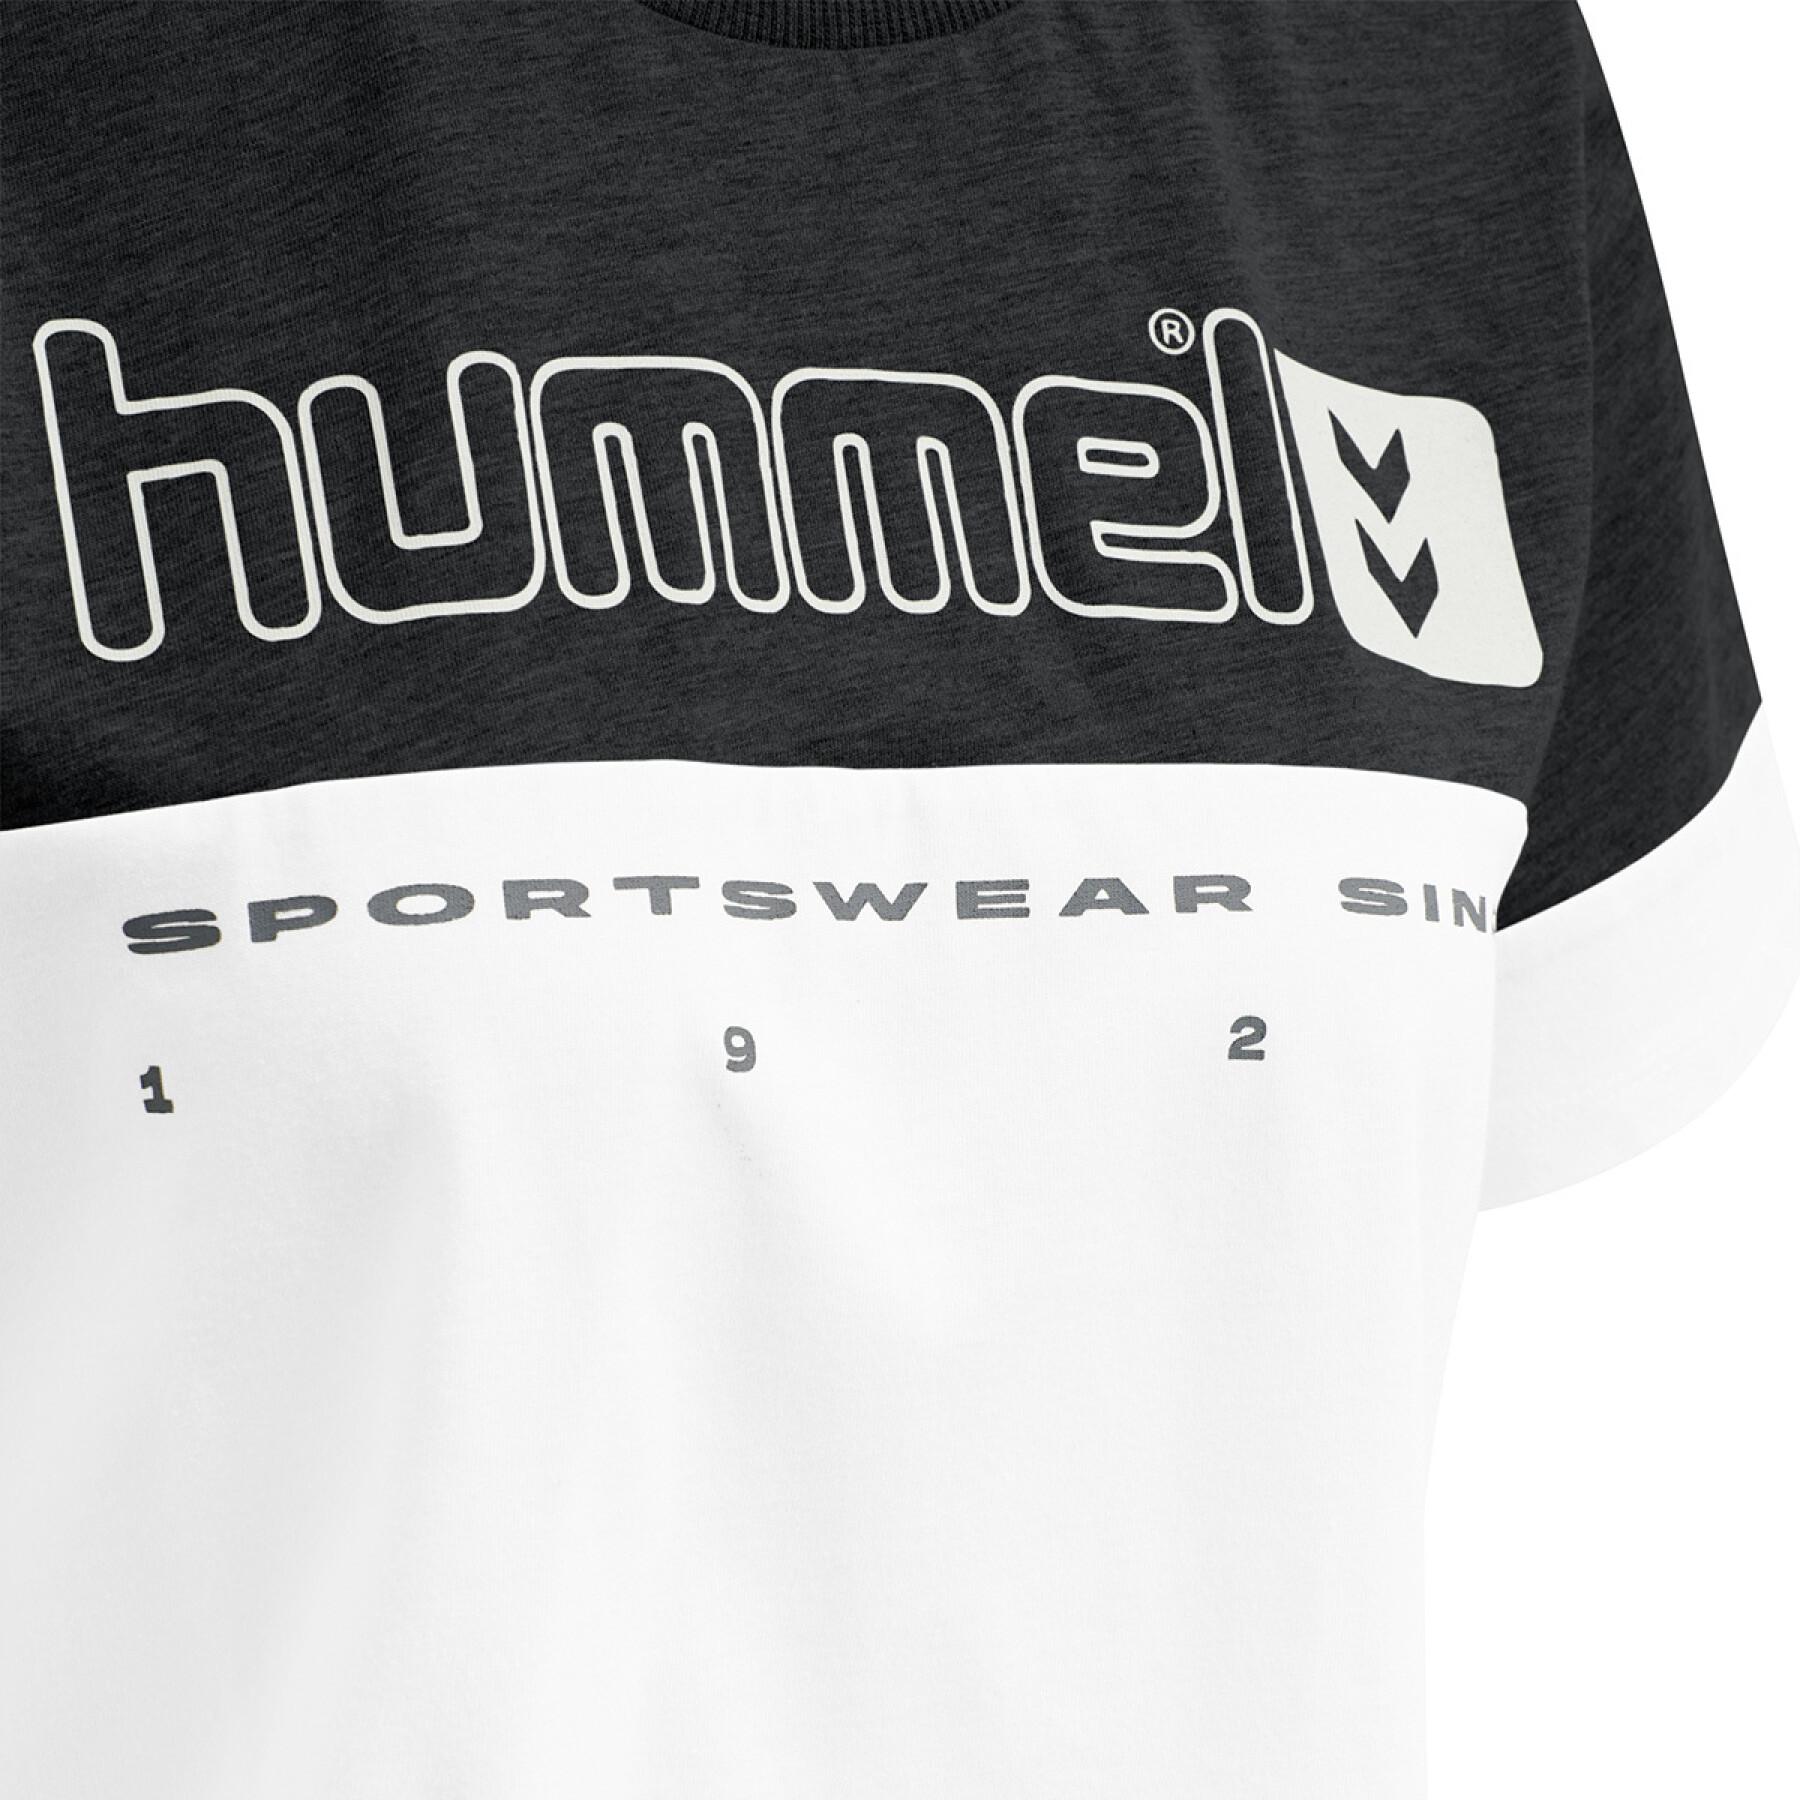 Dames-T-shirt Hummel hmlLGC siw